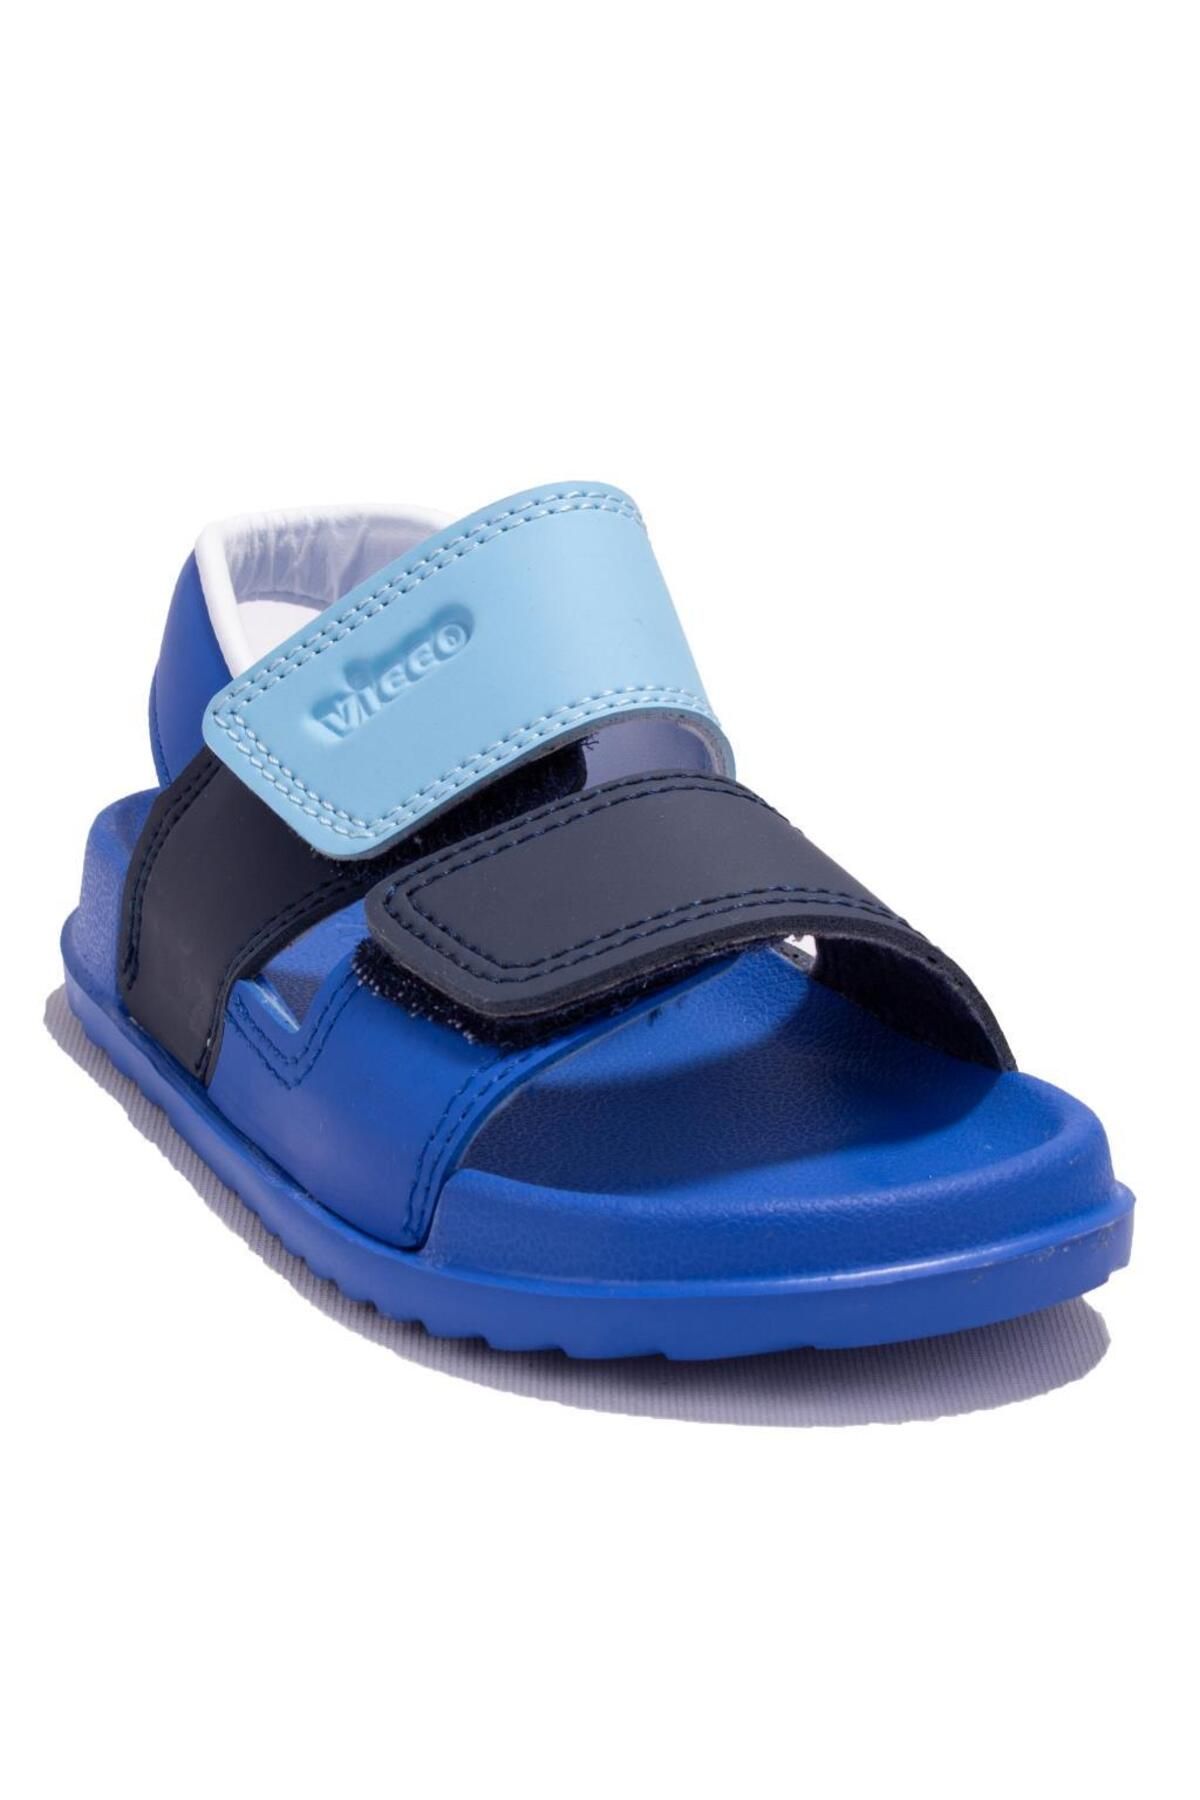 Vicco Krixi 321f23y252c Mavi Ortopedik Günlük Erkek Çocuk Spor Sandalet